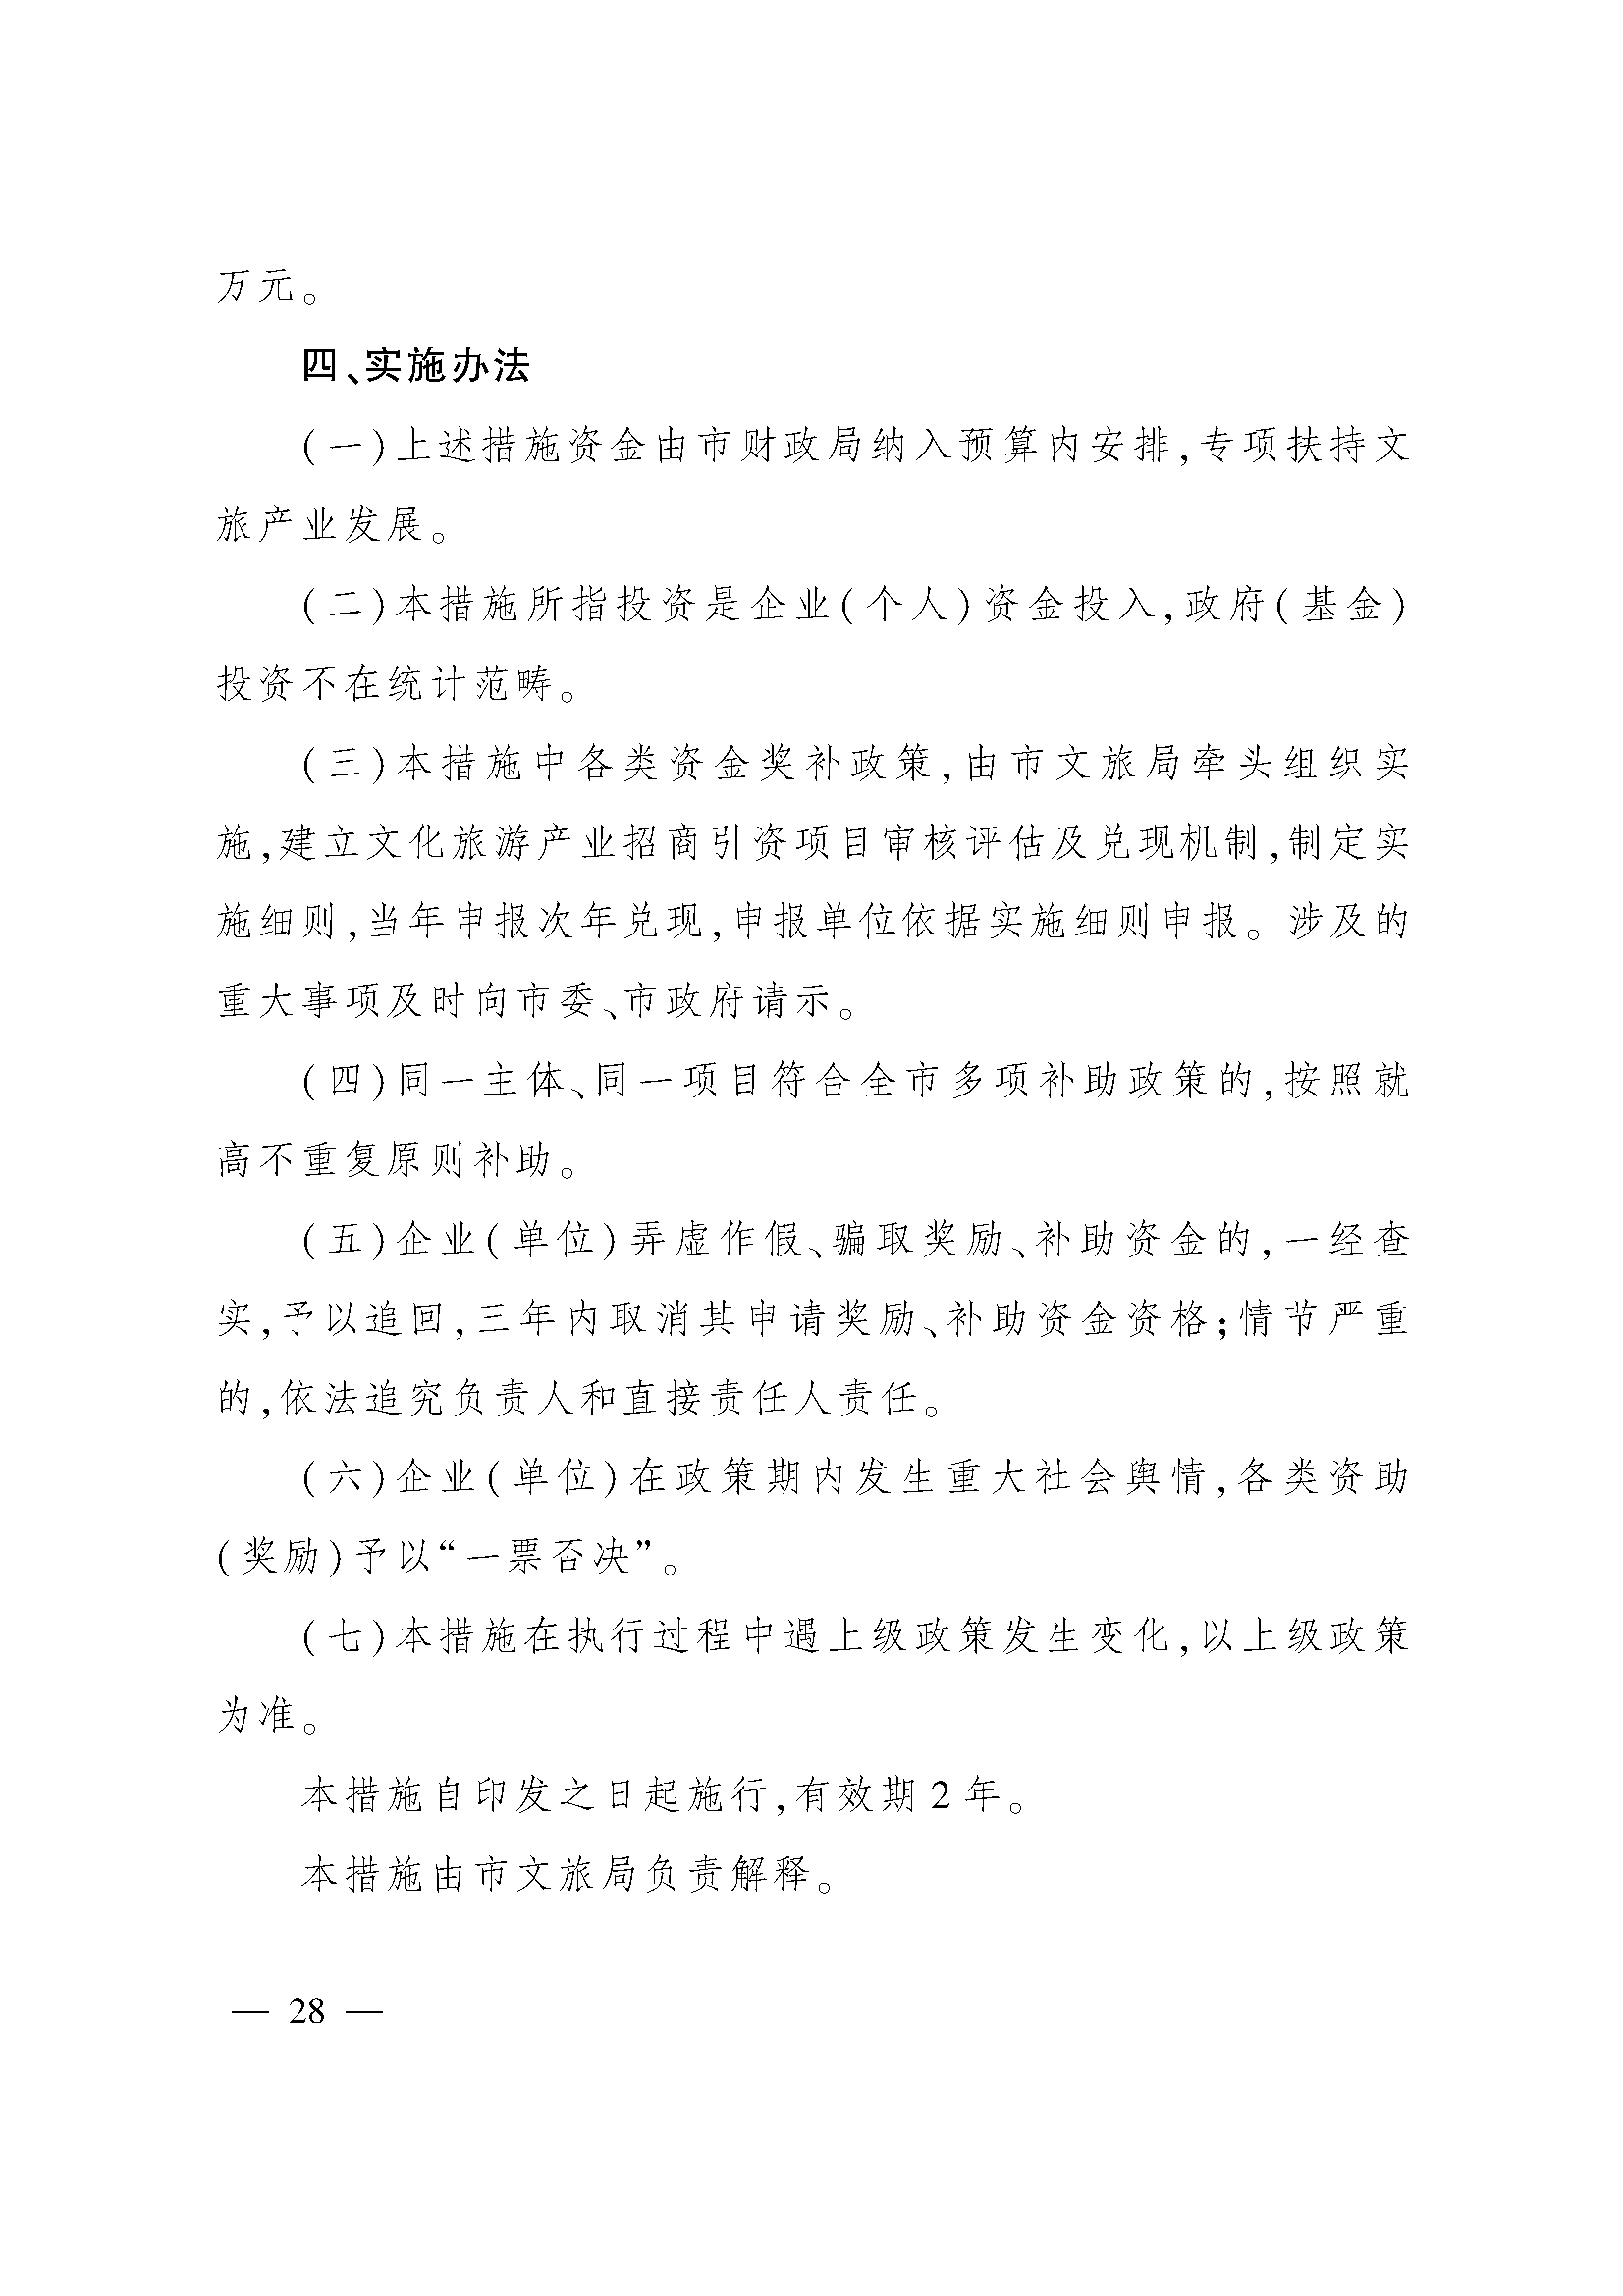 太原市人民政府办公室关于印发太原市招商引资若干措施的通知(图28)